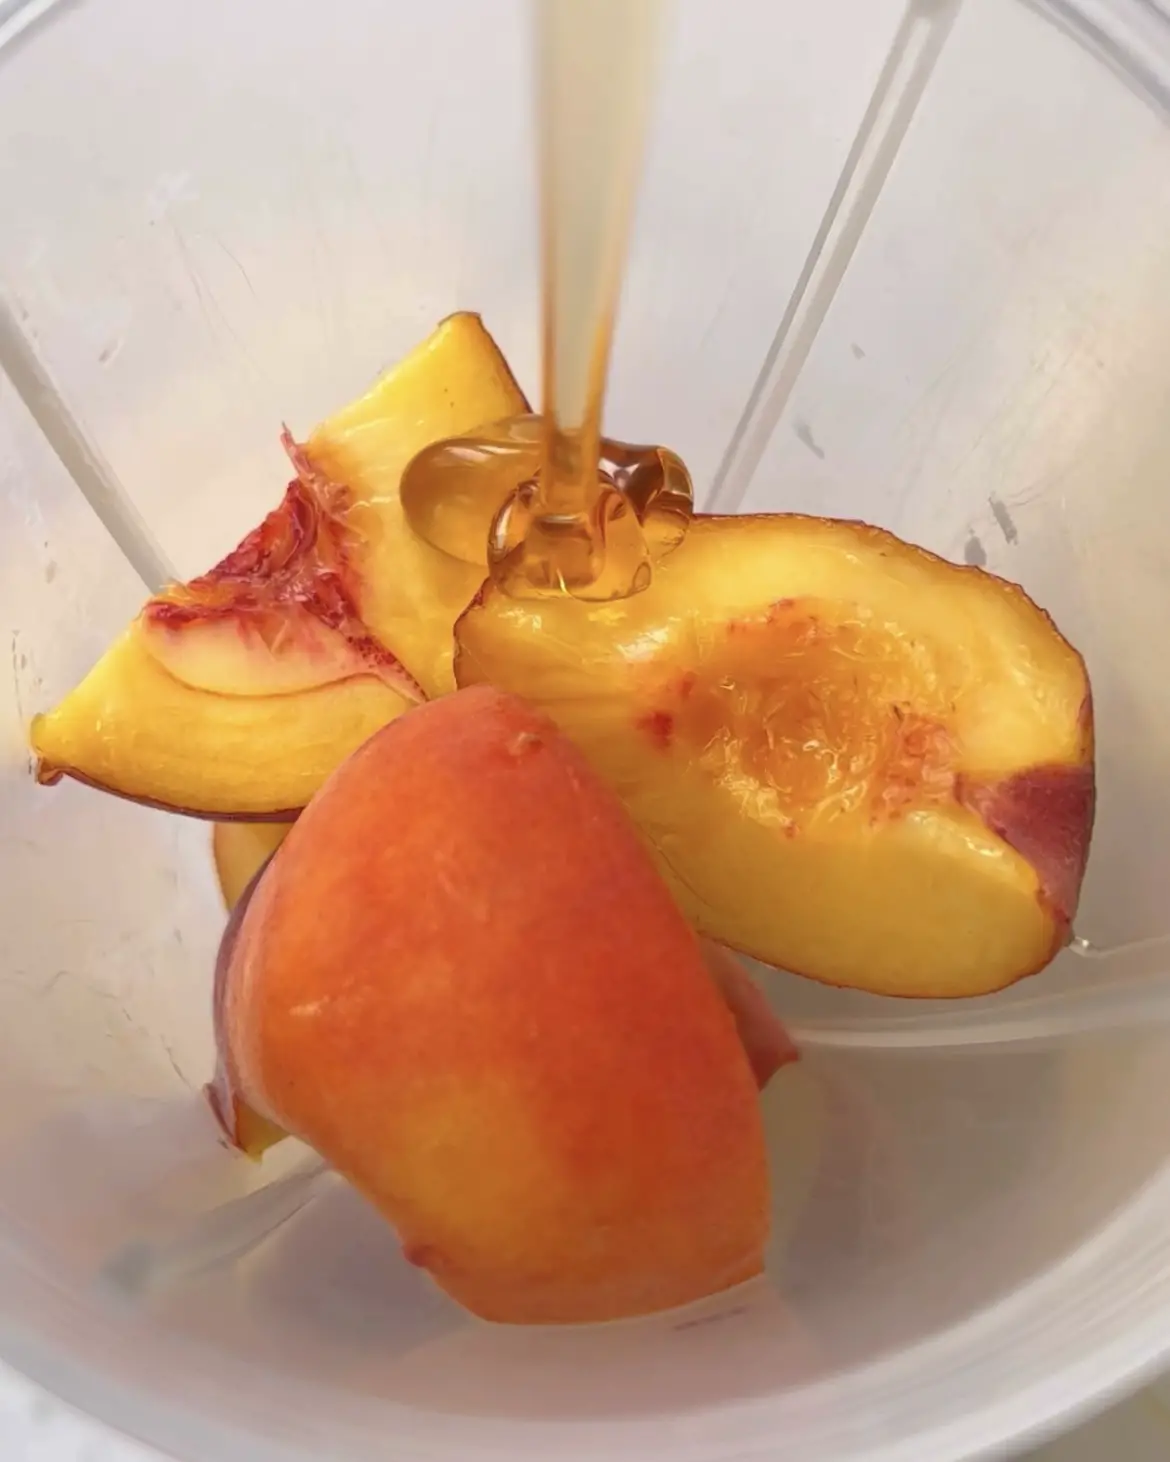 blend the peach mixture